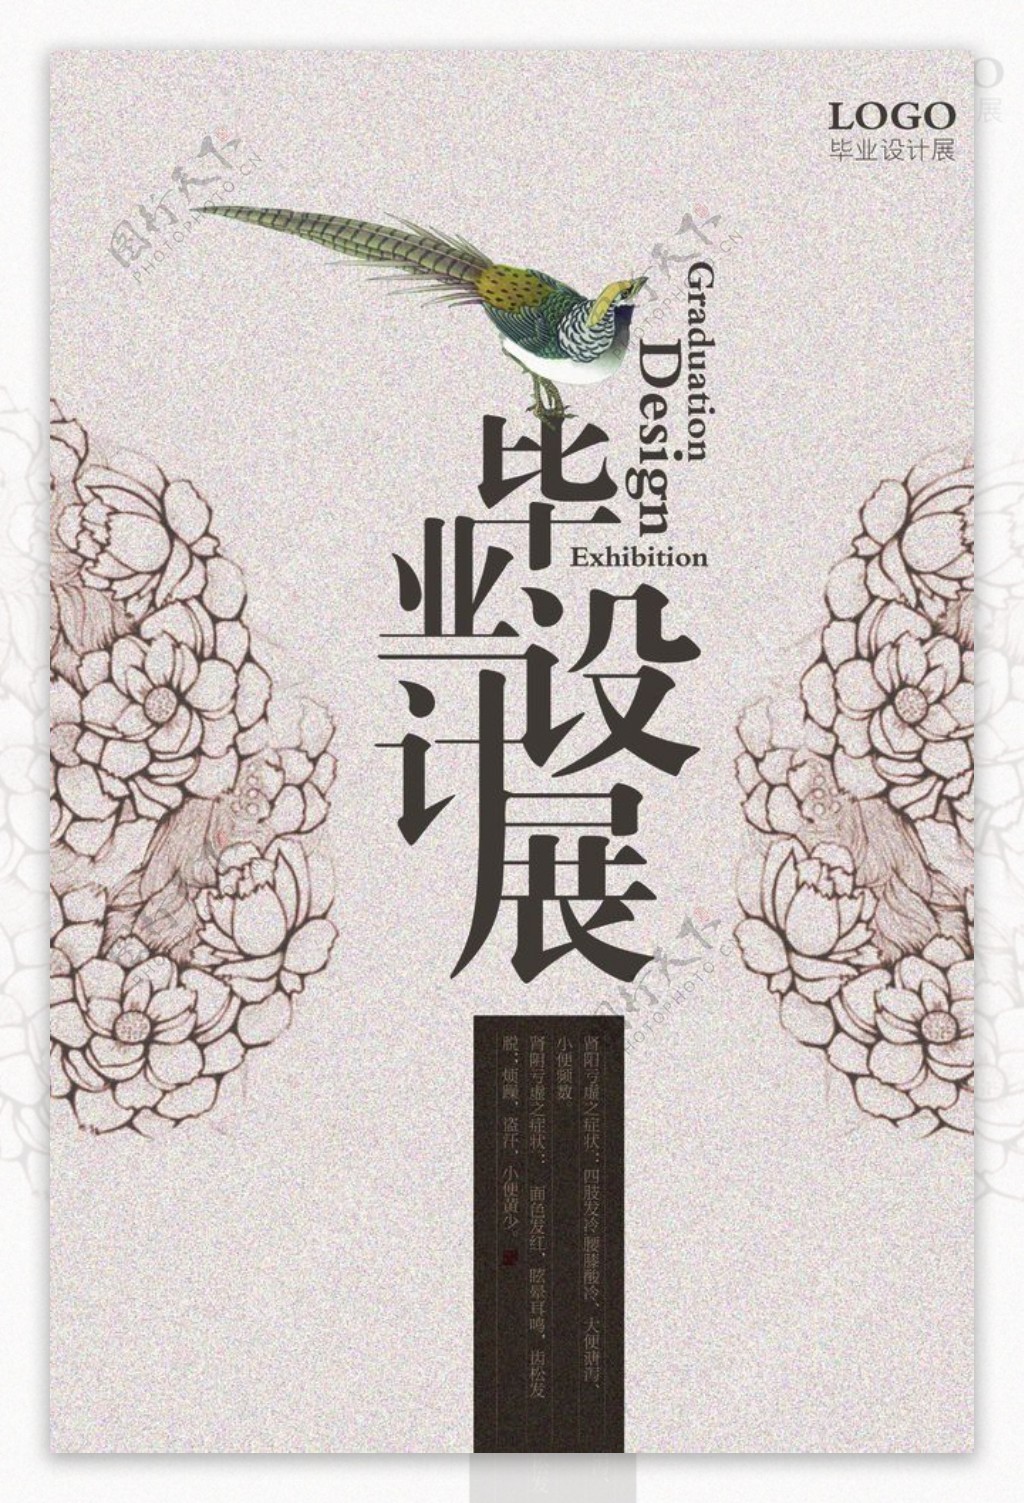 中国画工笔创意设计海报